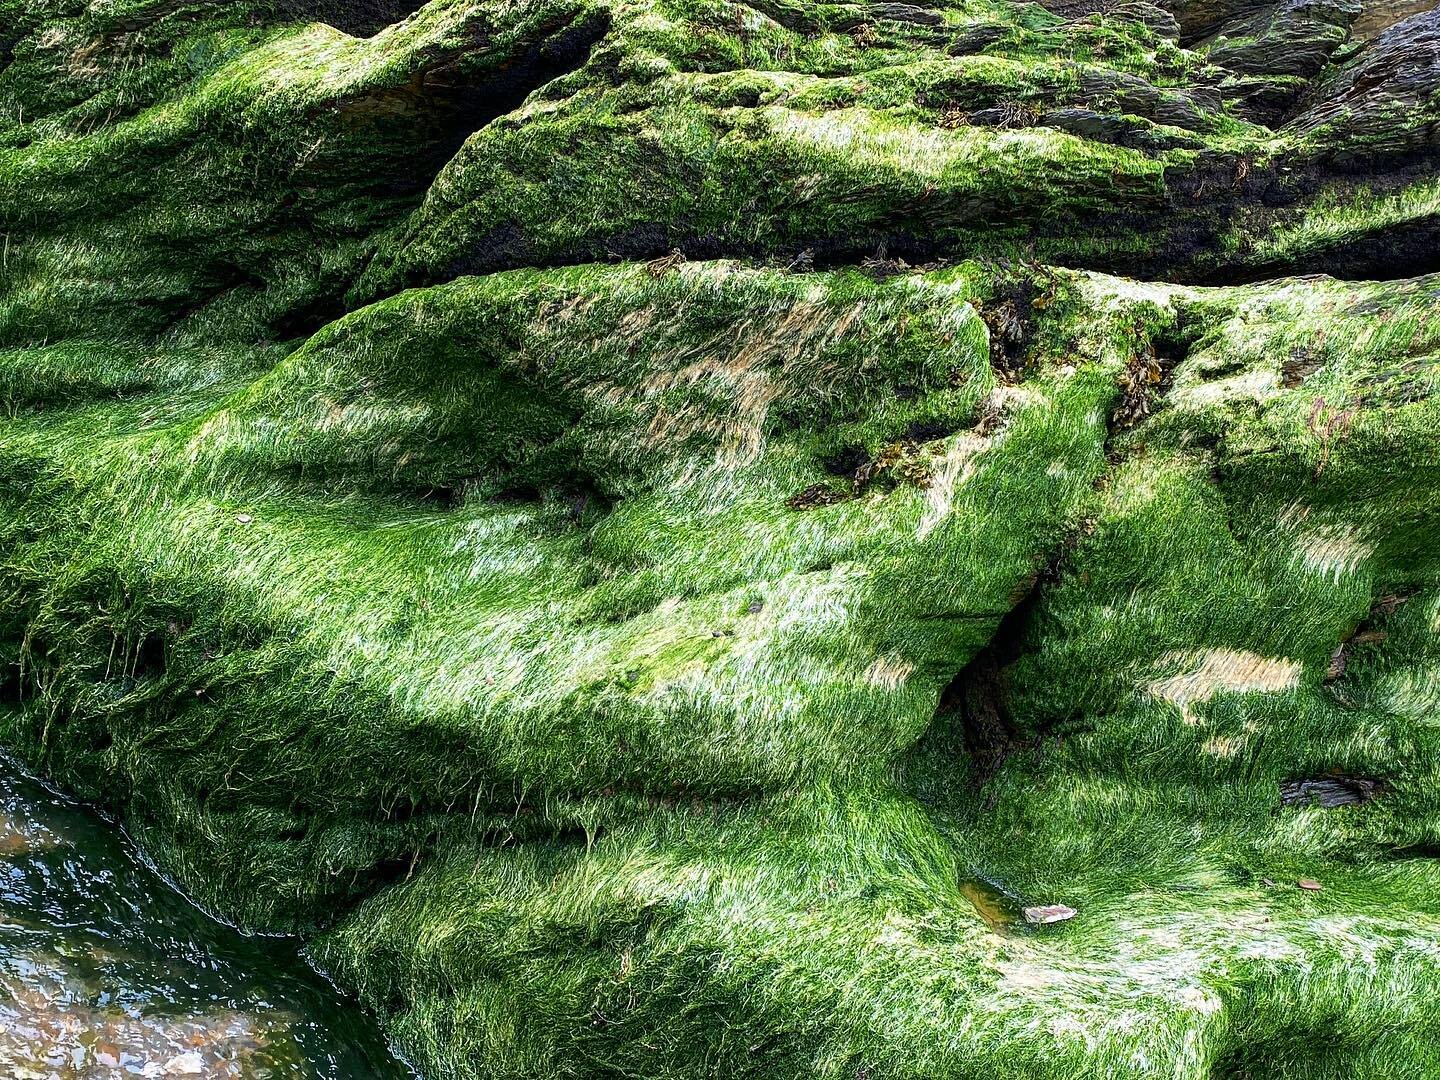 #greenfurryrocks #algae #photographerofinstagram #photographer #coastal #trip #journey #outintheuk #ilfracombe #southwestcoast #GreatBritain #Europe